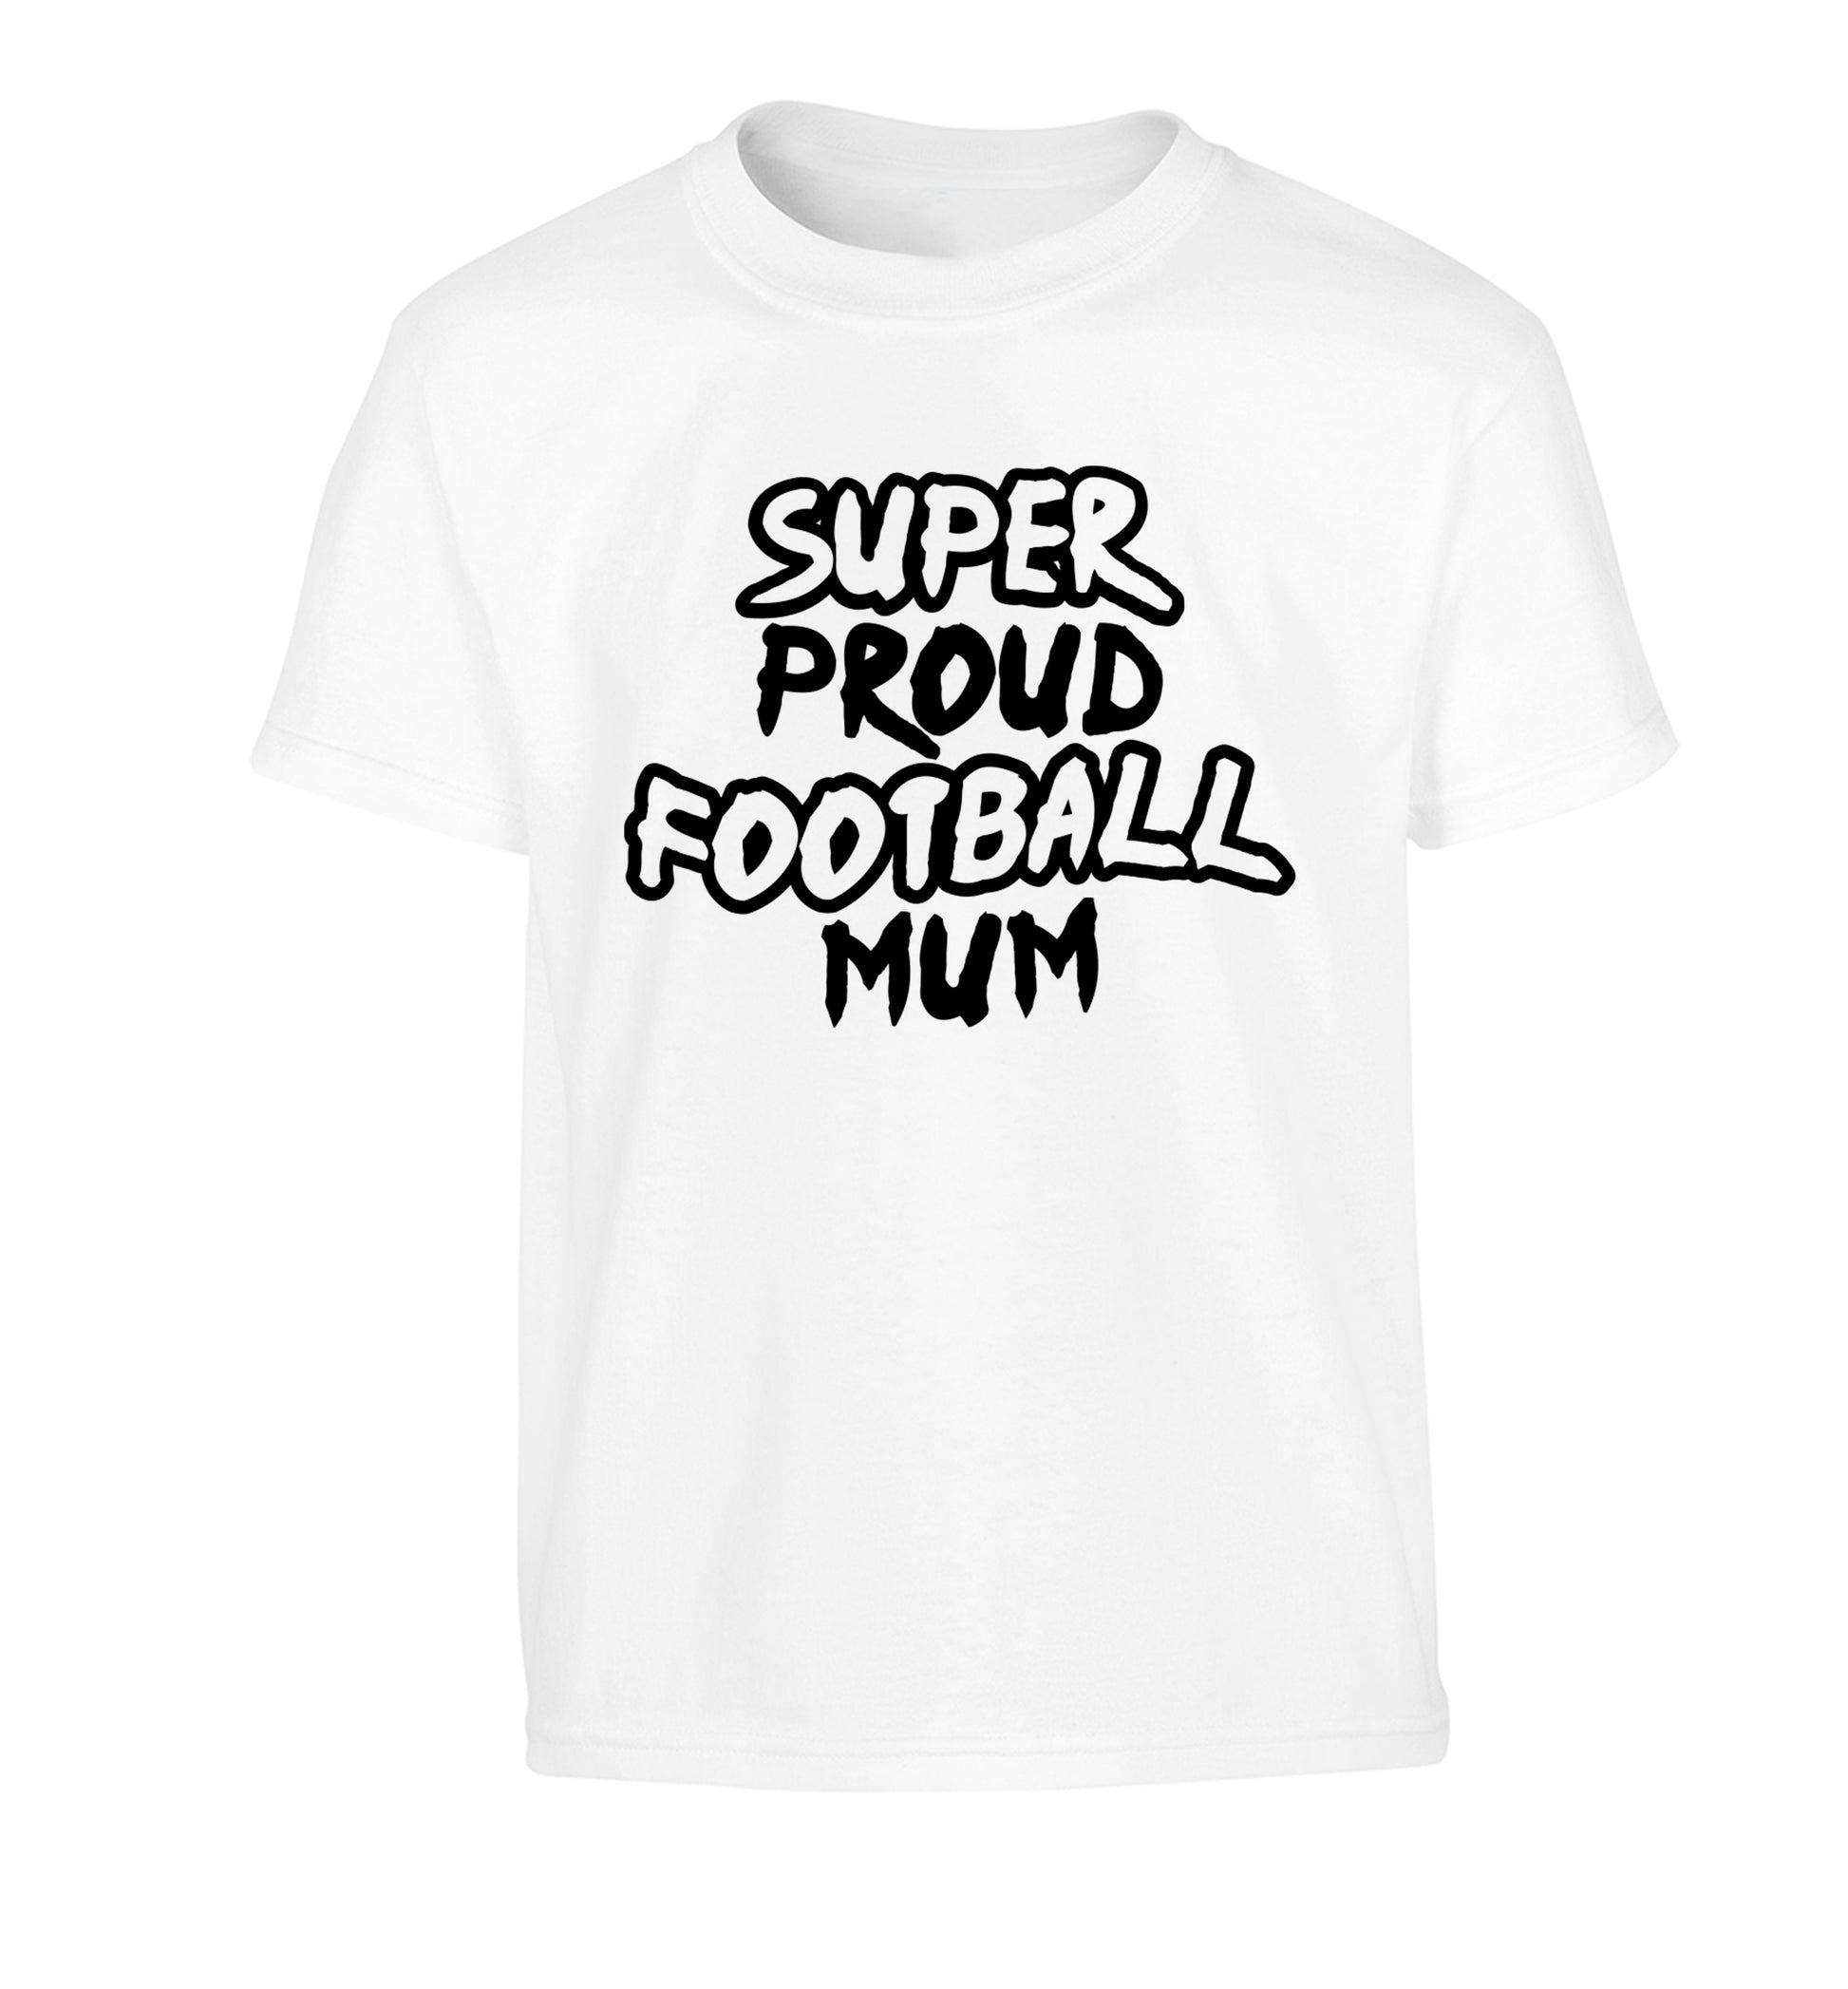 Super proud football mum Children's white Tshirt 12-14 Years